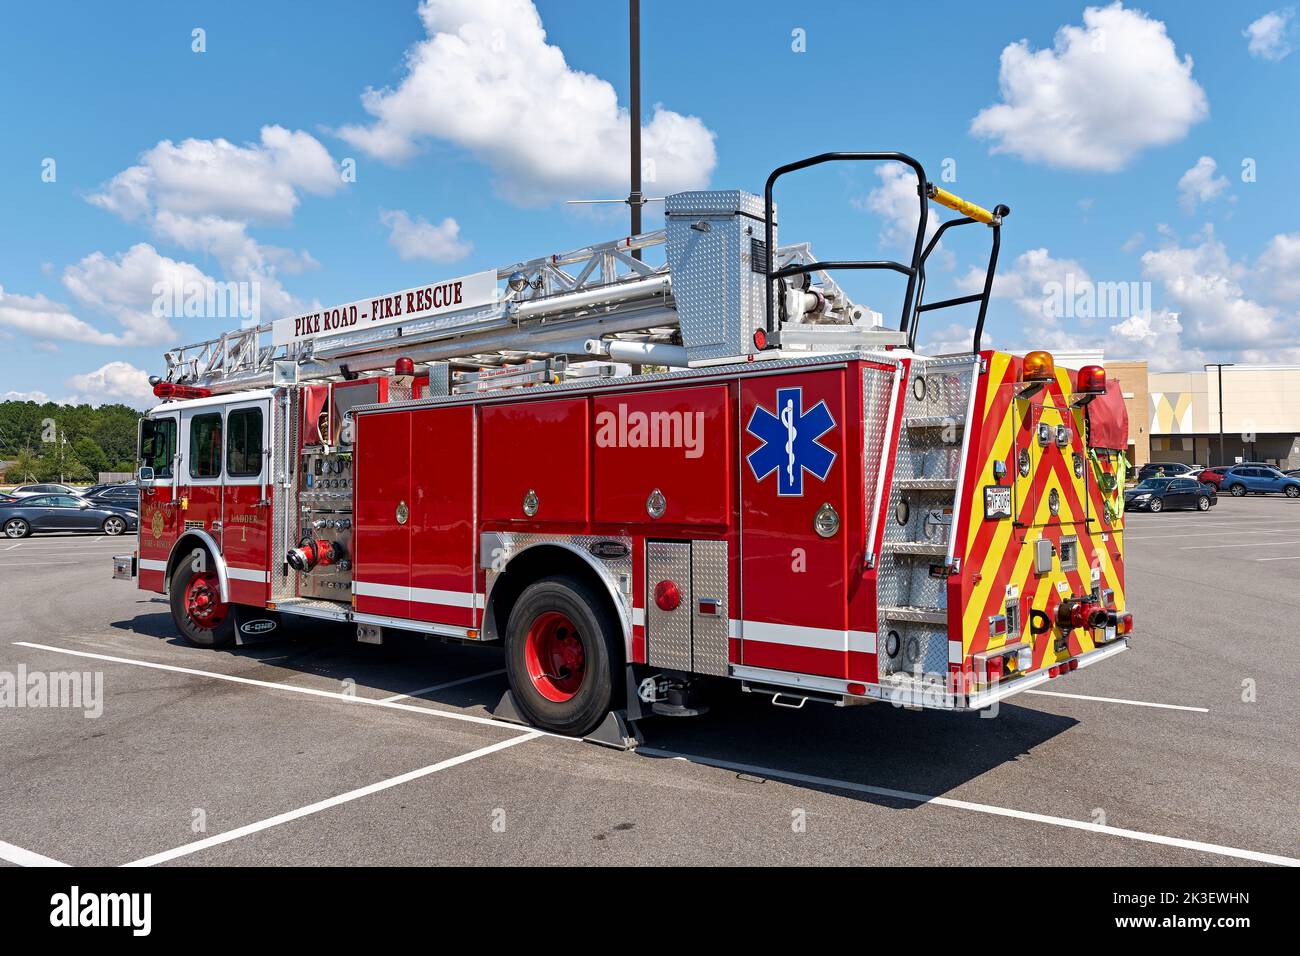 Grand camion à échelle rouge volontaire ou camion d'incendie utilisé comme véhicule d'urgence et véhicule de sauvetage pour un service d'incendie local à Pike Road Alabama, États-Unis. Banque D'Images